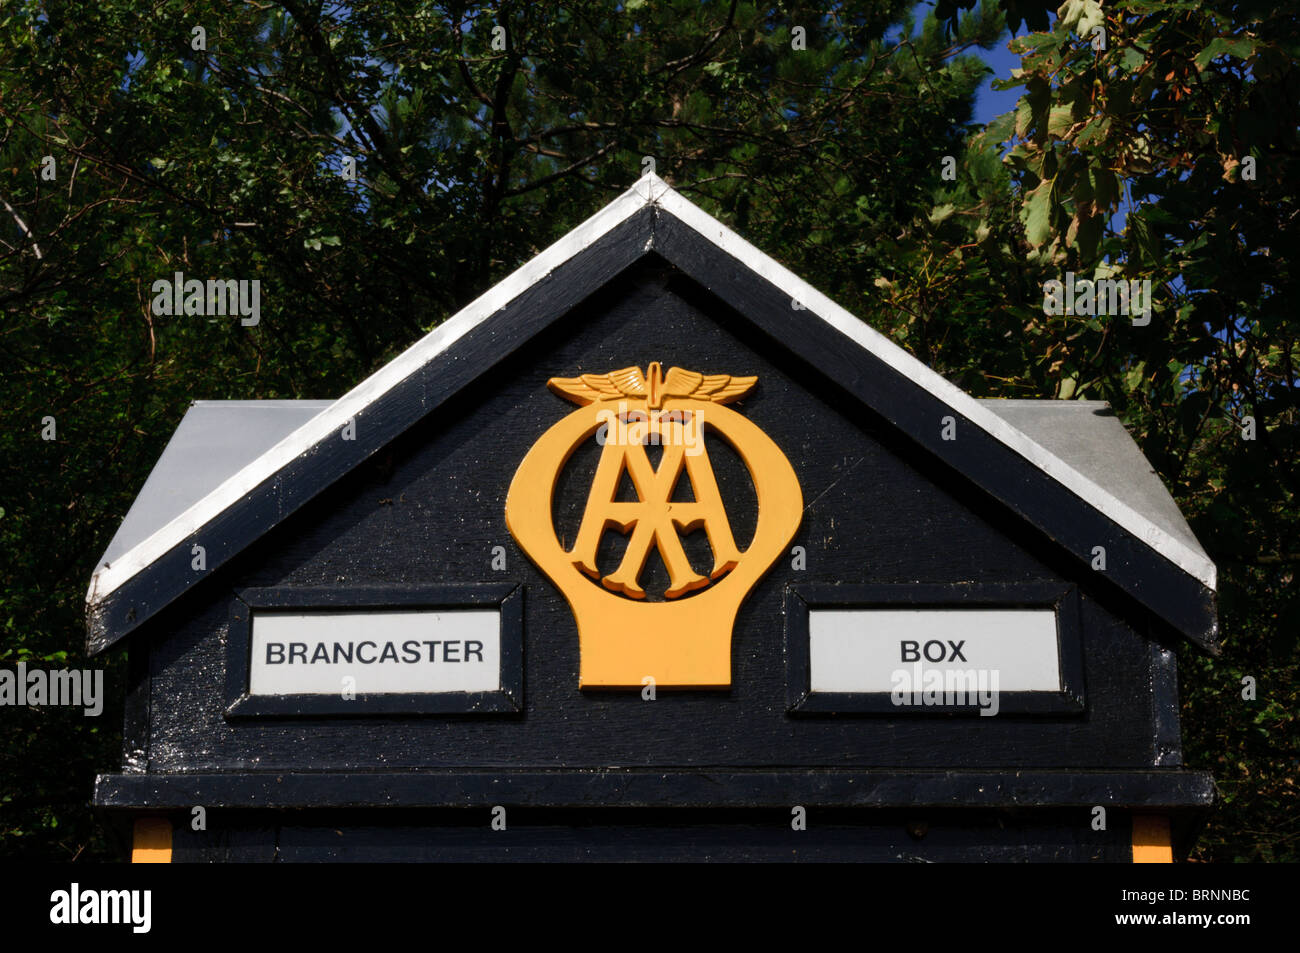 Une Automobile Association téléphone fort à Brancaster Staithe, Norfolk avec l'insigne AA traditionnels Banque D'Images